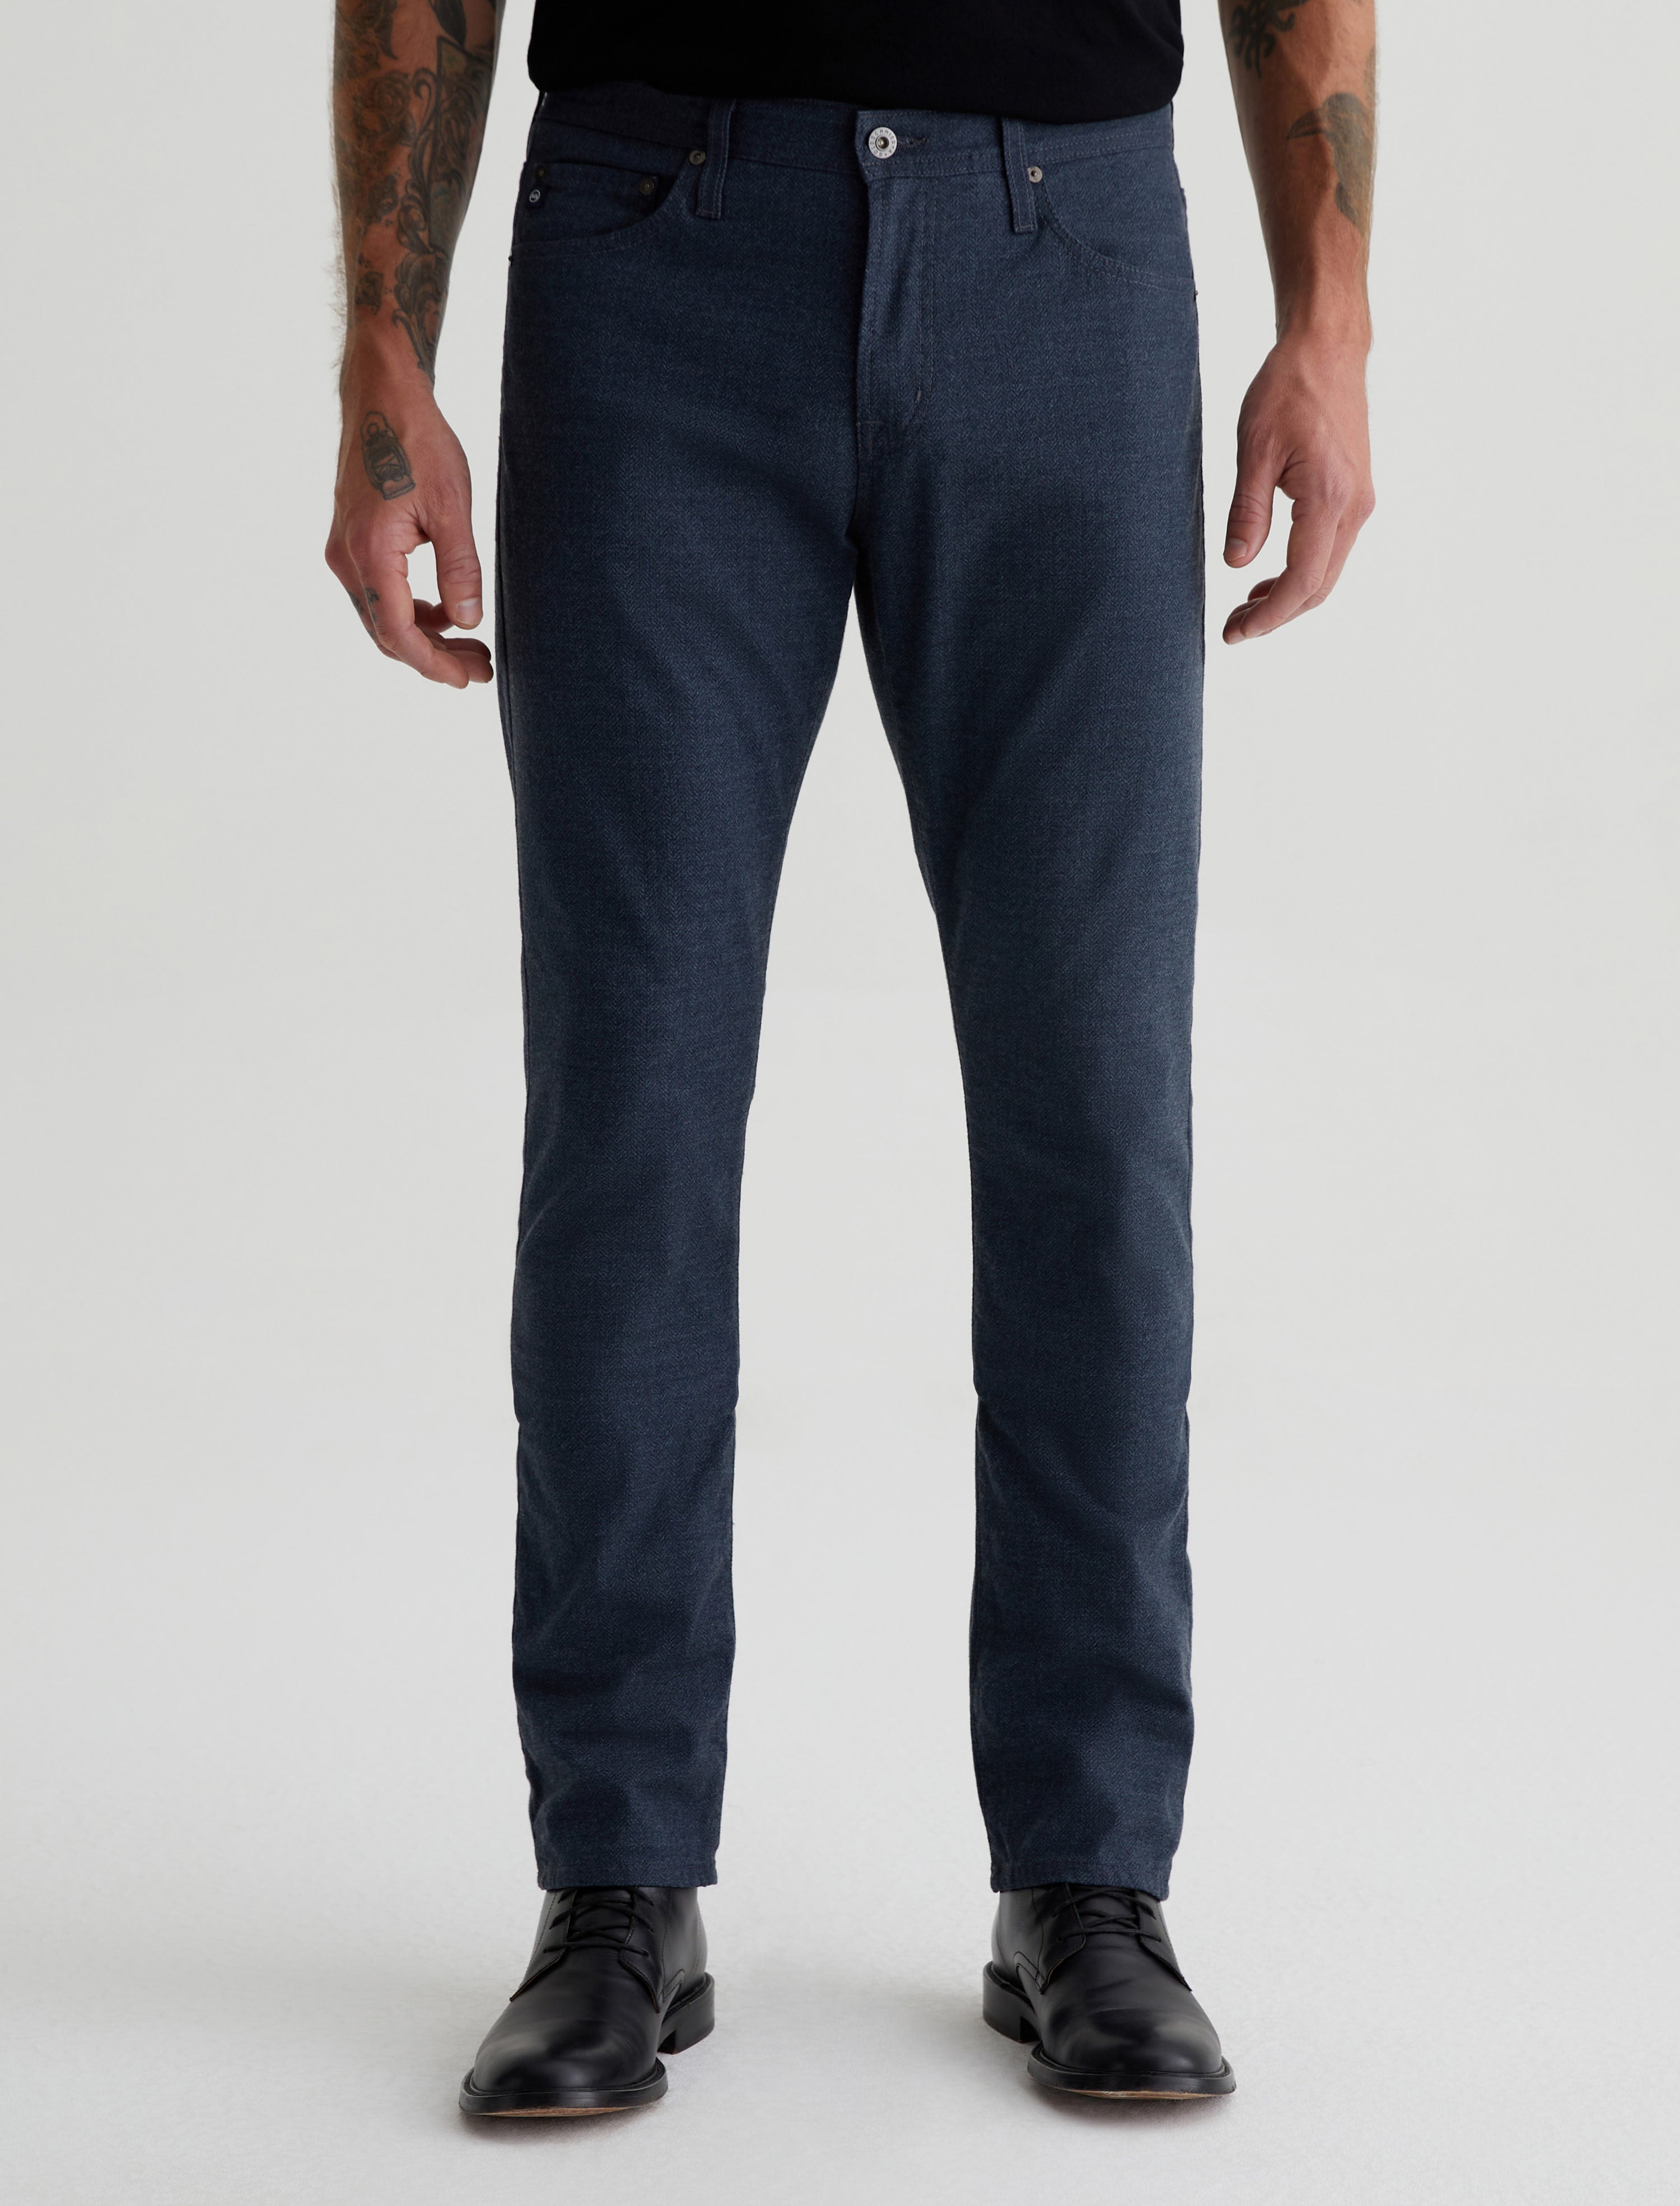 Buy THIRD QUADRANT Loose Fit Shade Black Multiple Pocket Premium Cargo Denim  Jeans for Men (28) at Amazon.in